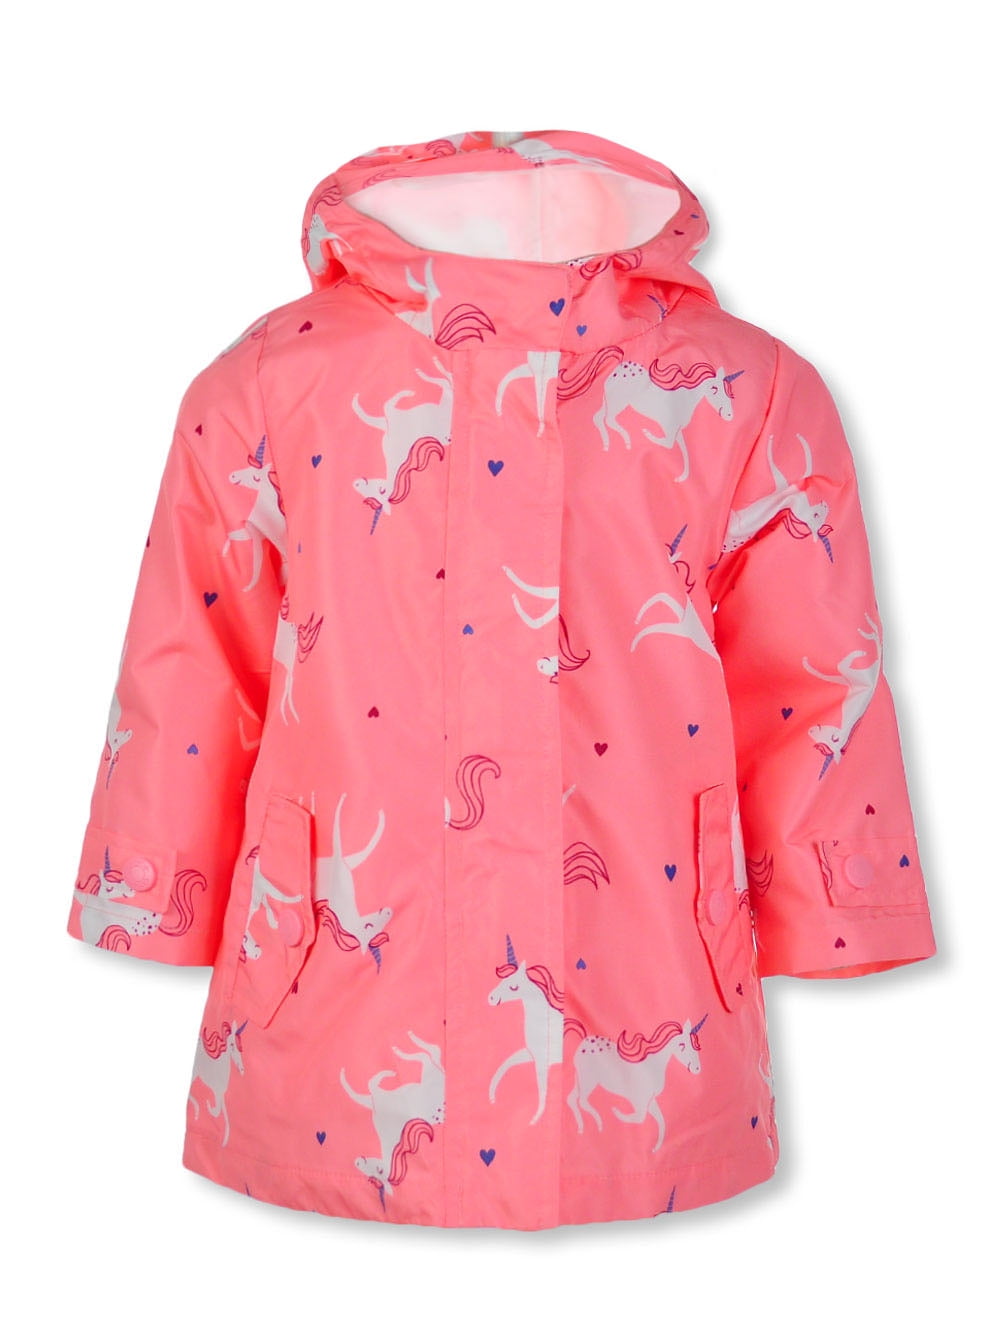 Unicorn Rain Coat Hatley Raincoat MAJESTIC UNICORN Rain Jacket Age 2 & 3 Years